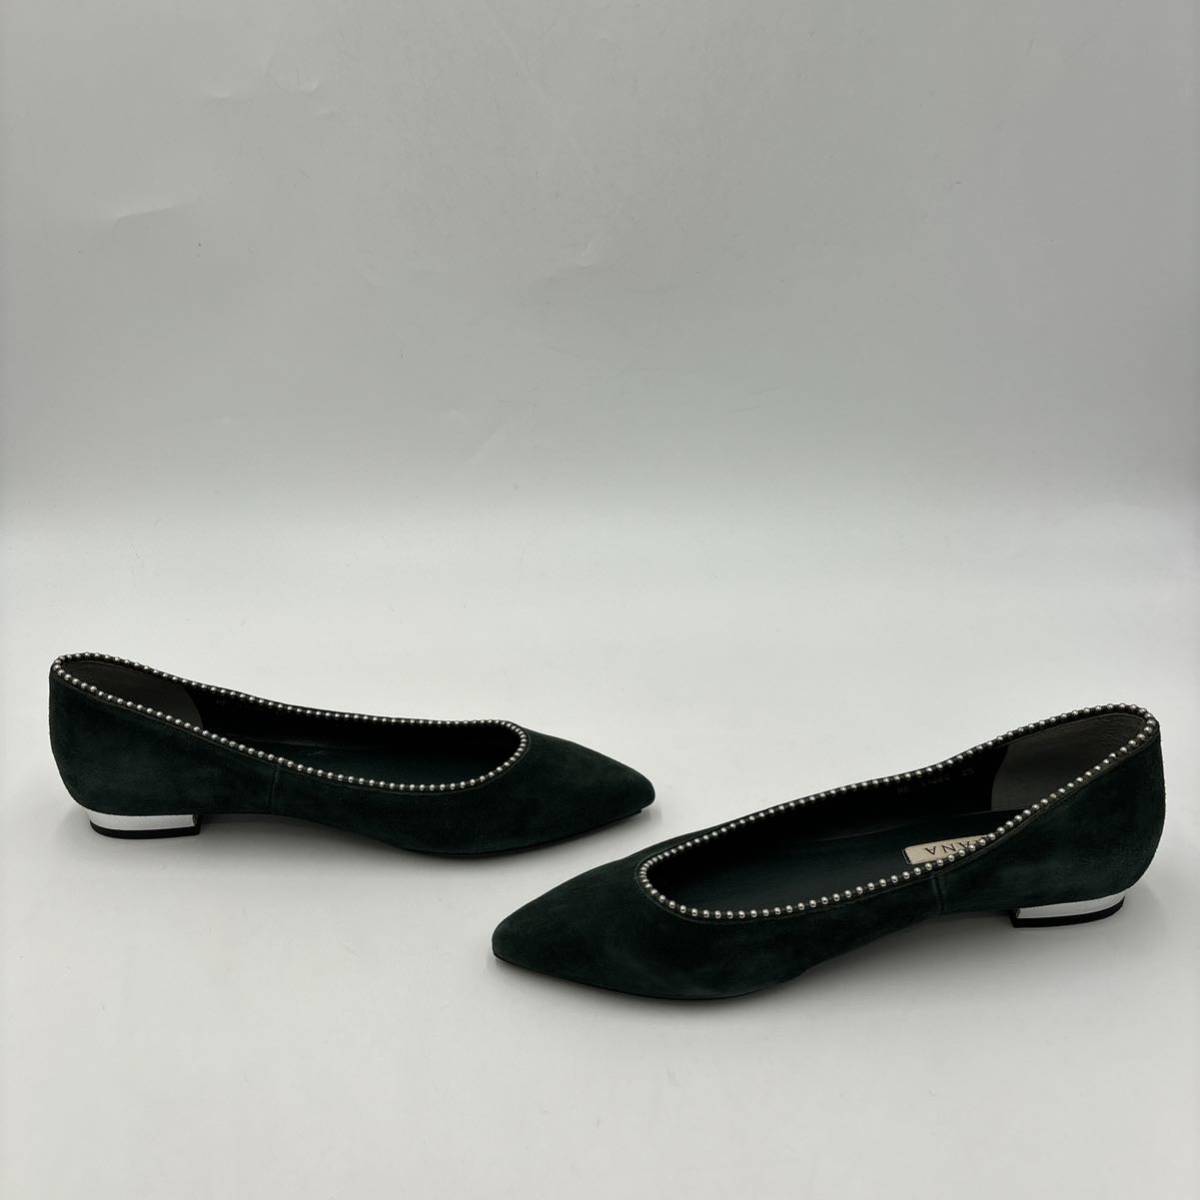 P ＊ 日本製 '洗練されたシルエット' DIANA ダイアナ 本革 スエードレザー / フラット パンプス 25cm MR レディース 婦人靴 シューズ _画像4